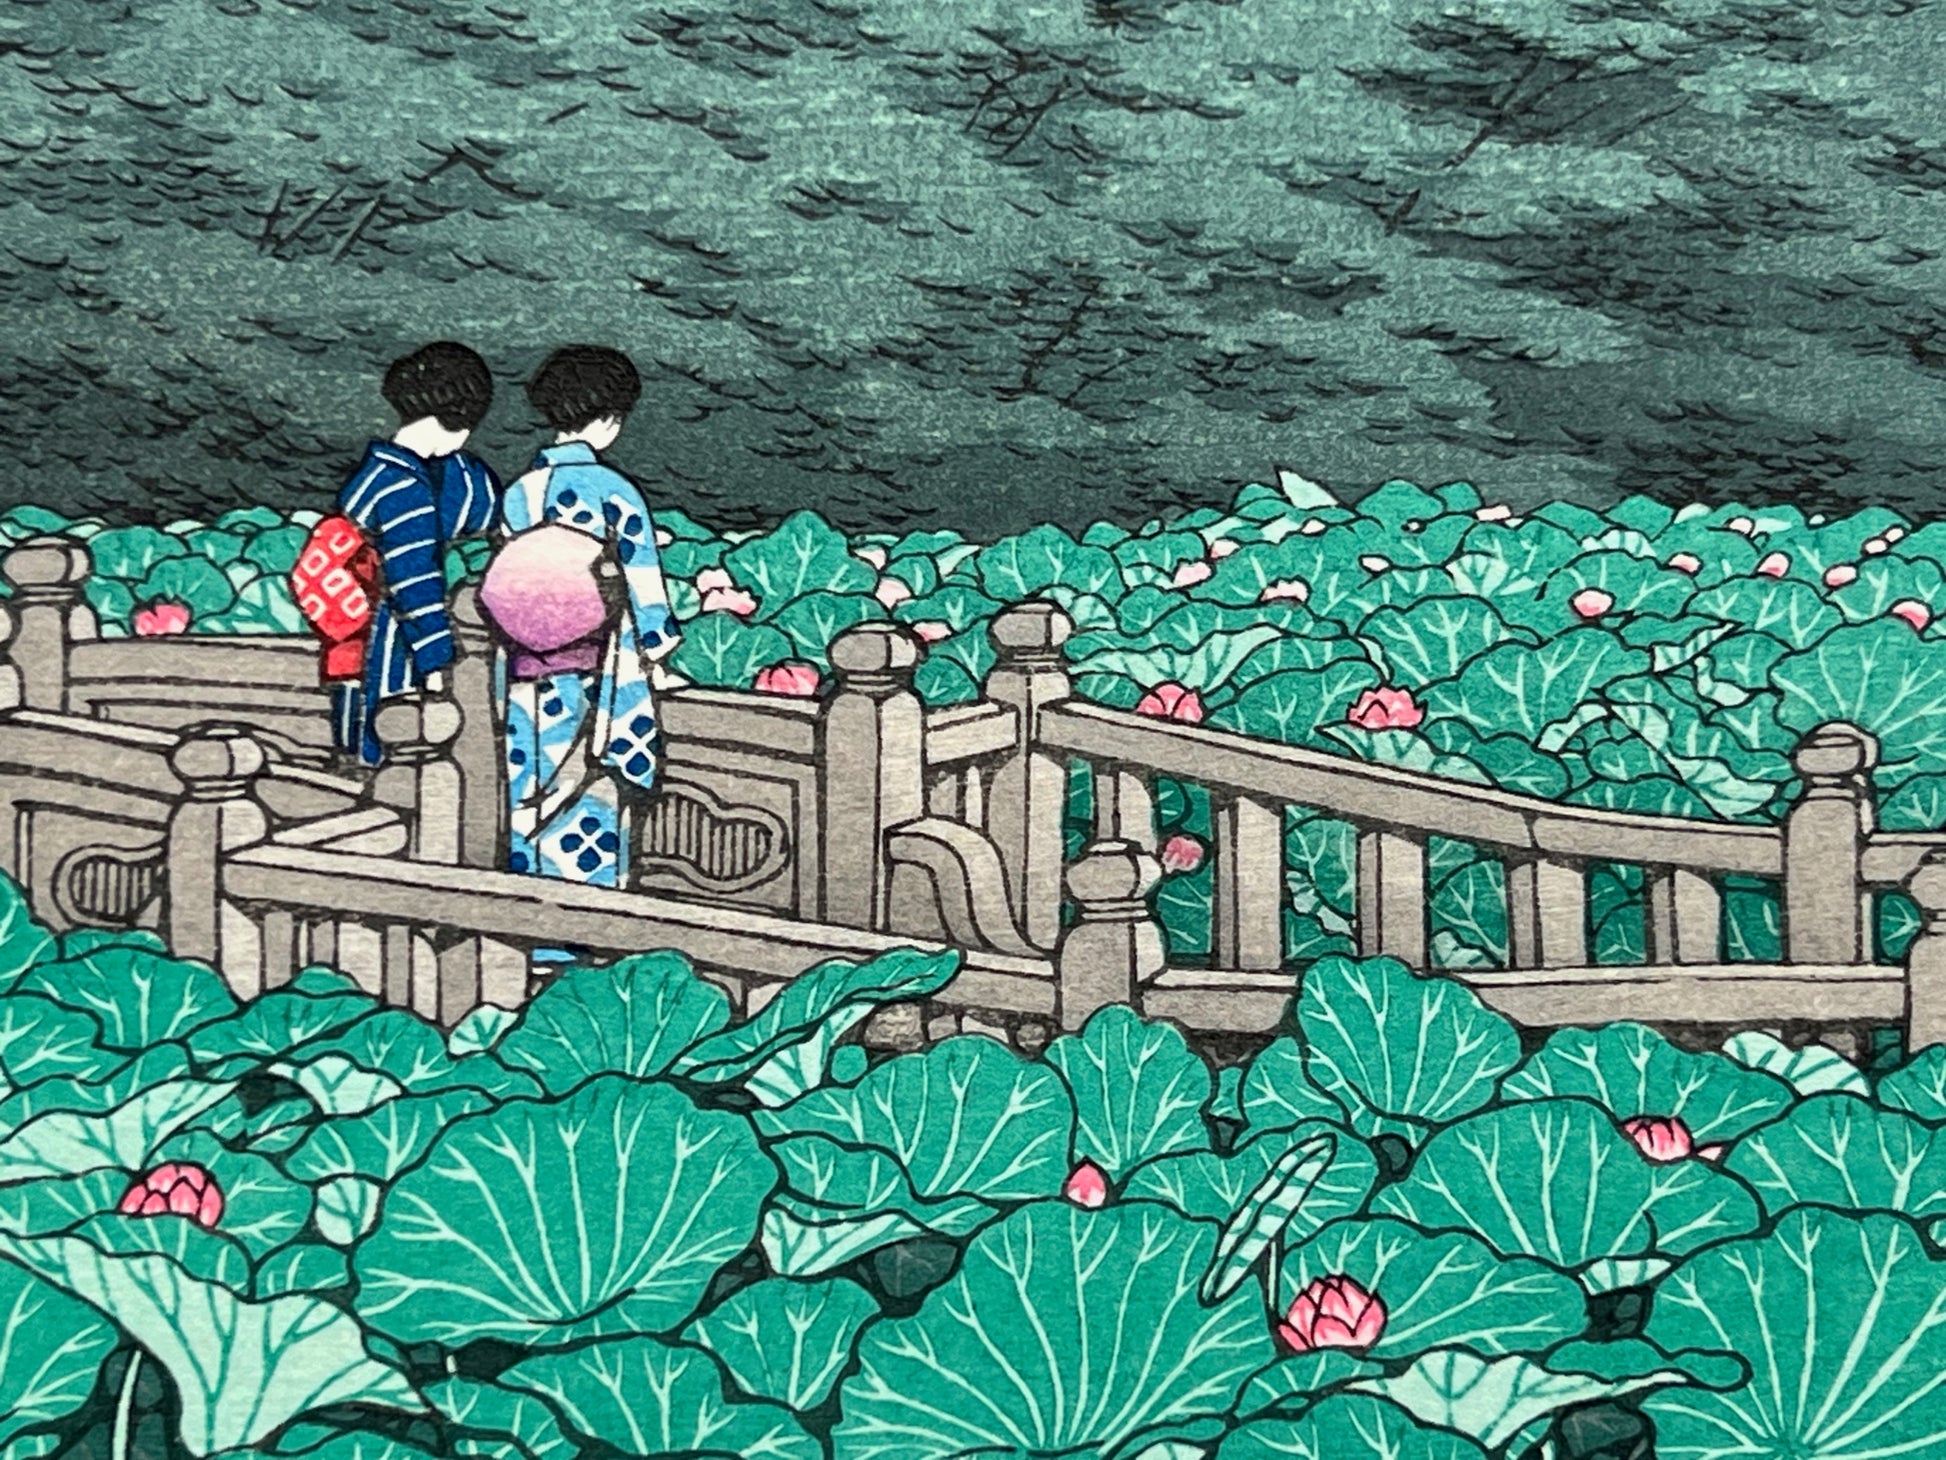 estampe japonaise deux geisha sur pont au milieu de nénuphars en fleur, gros plan sur les deux femmes de dos, avec obi de couleur